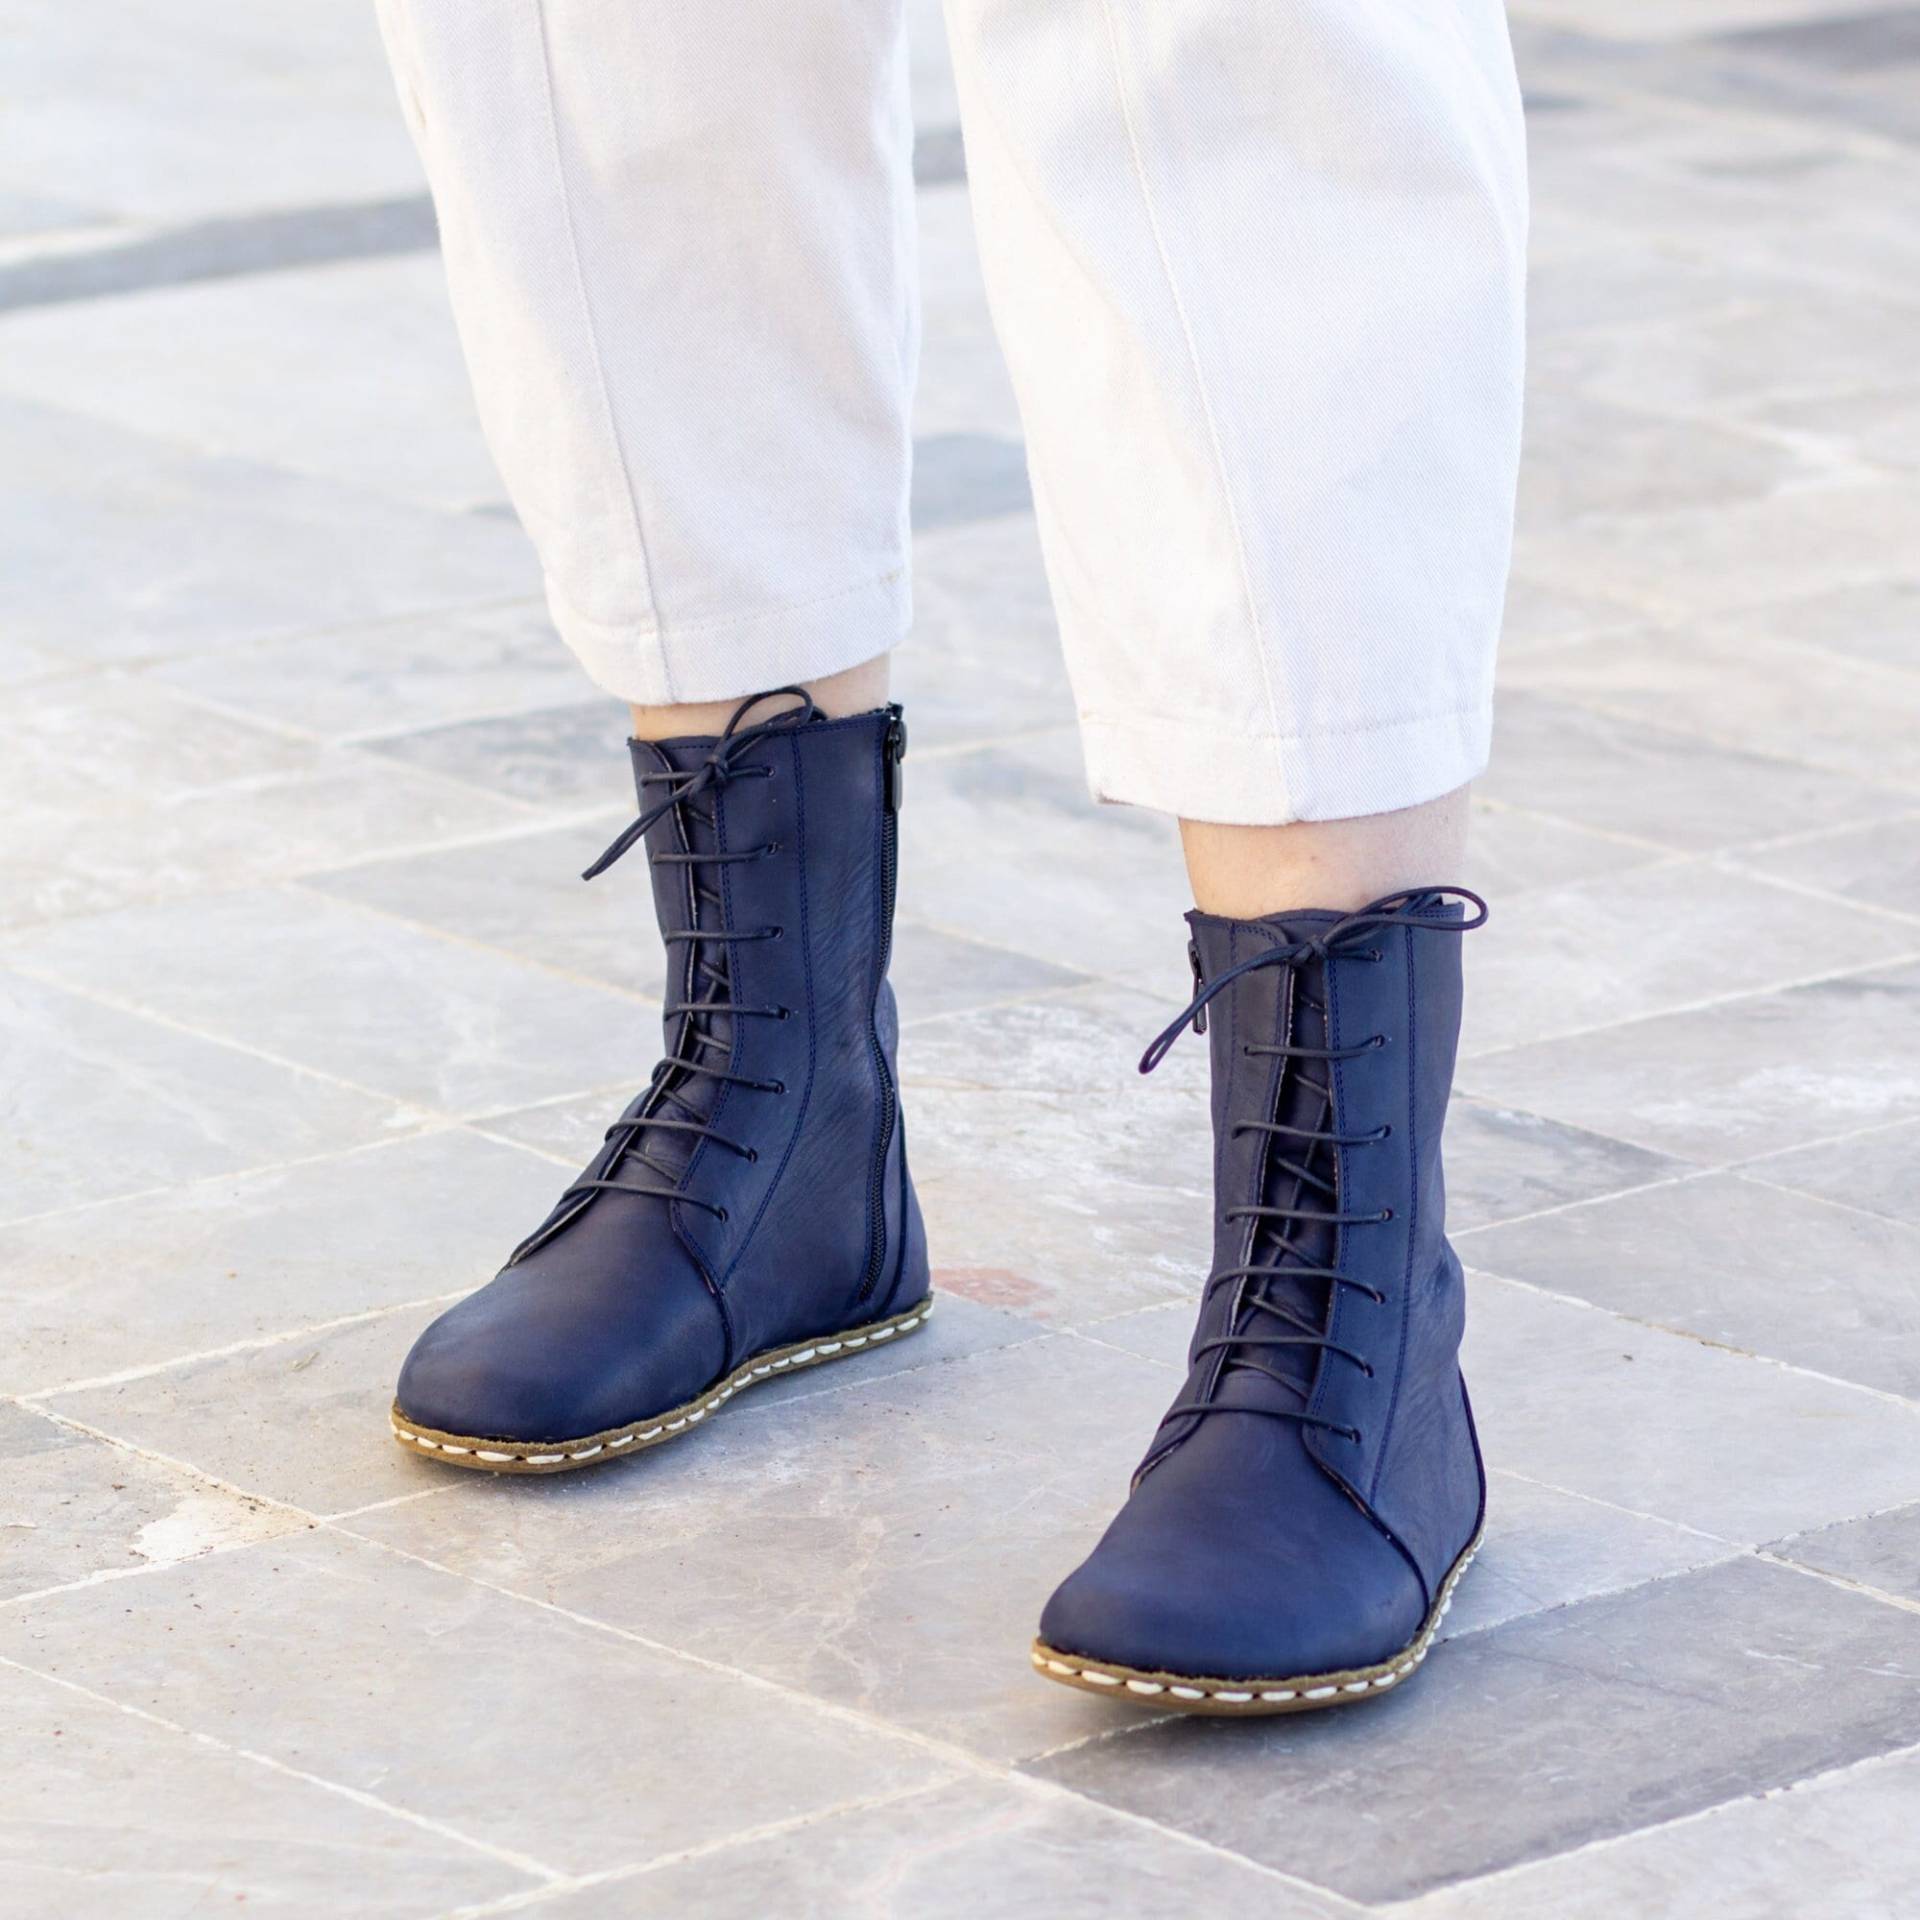 Erdende Lederstiefel | Barfuß Damen Stiefel Erdung Kupferniete Büffelleder Außensohle Crazy Navy Blau von NefesShoes